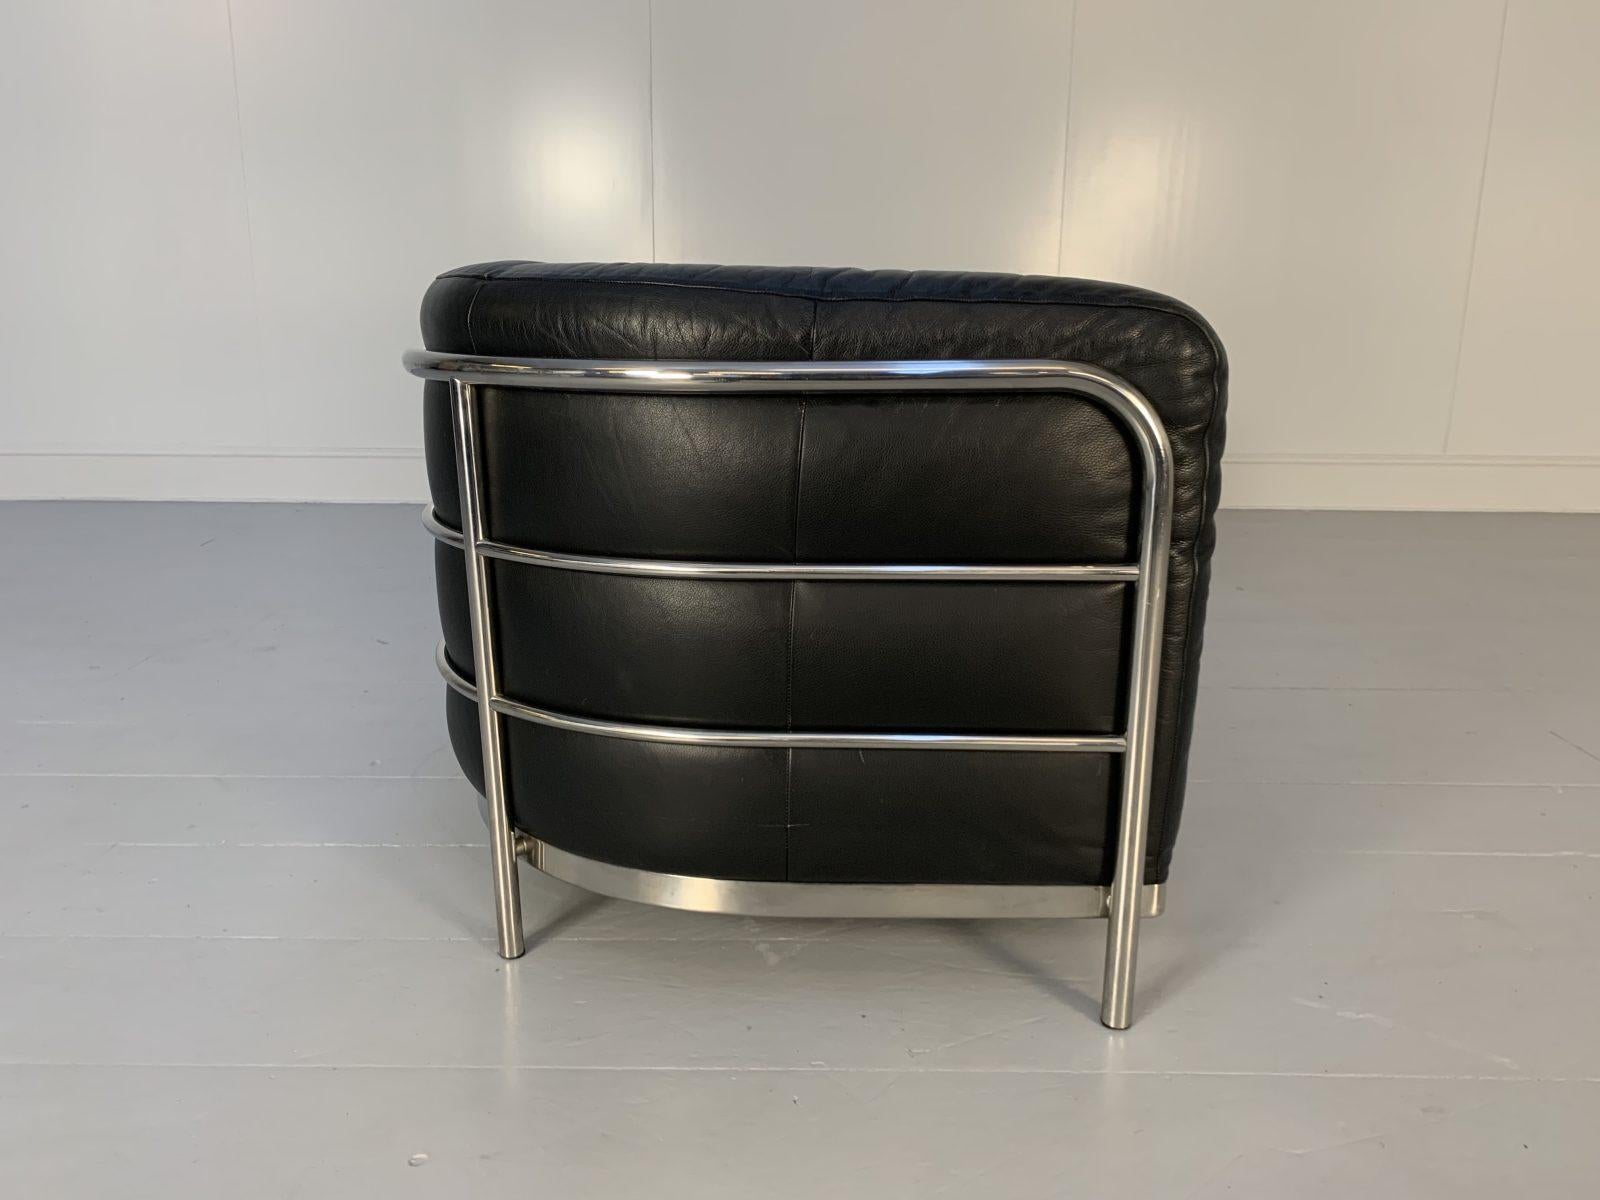 Zanotta “Onda” Sofa – 2-Seat – in Black “Scozia” Leather and Chrome For Sale 3